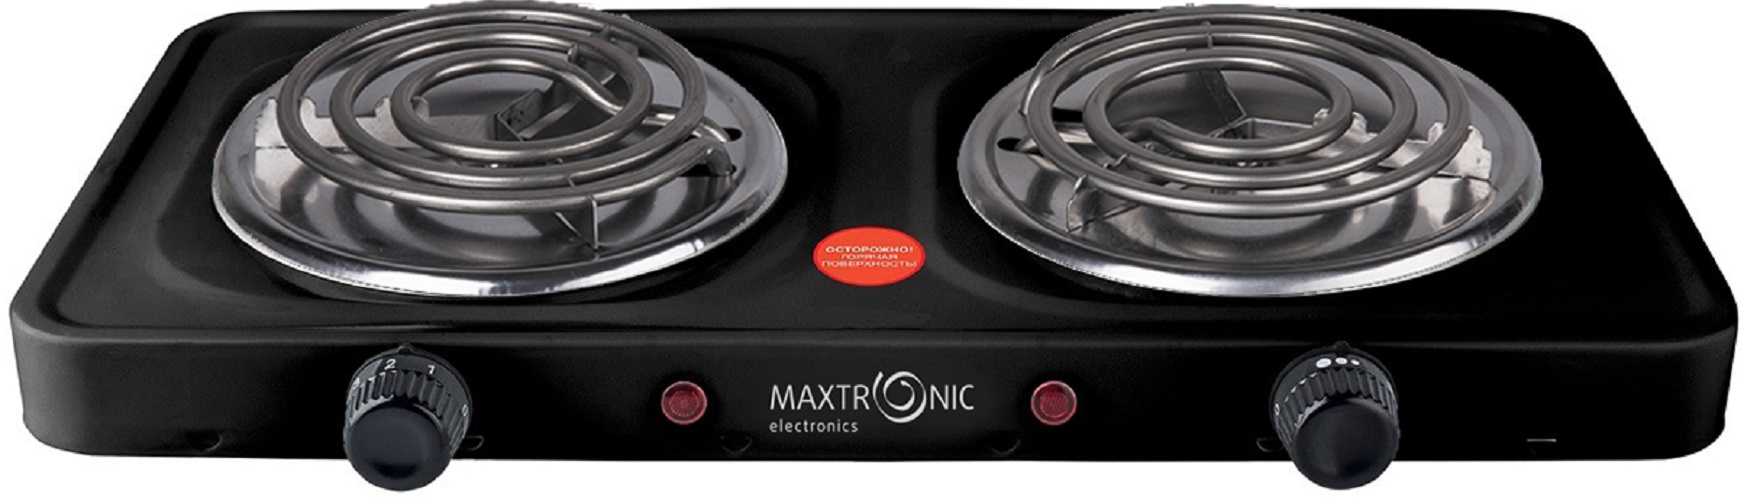 Настольная электрическая плитка MAXTRONIC MAX-AT-002BS черный